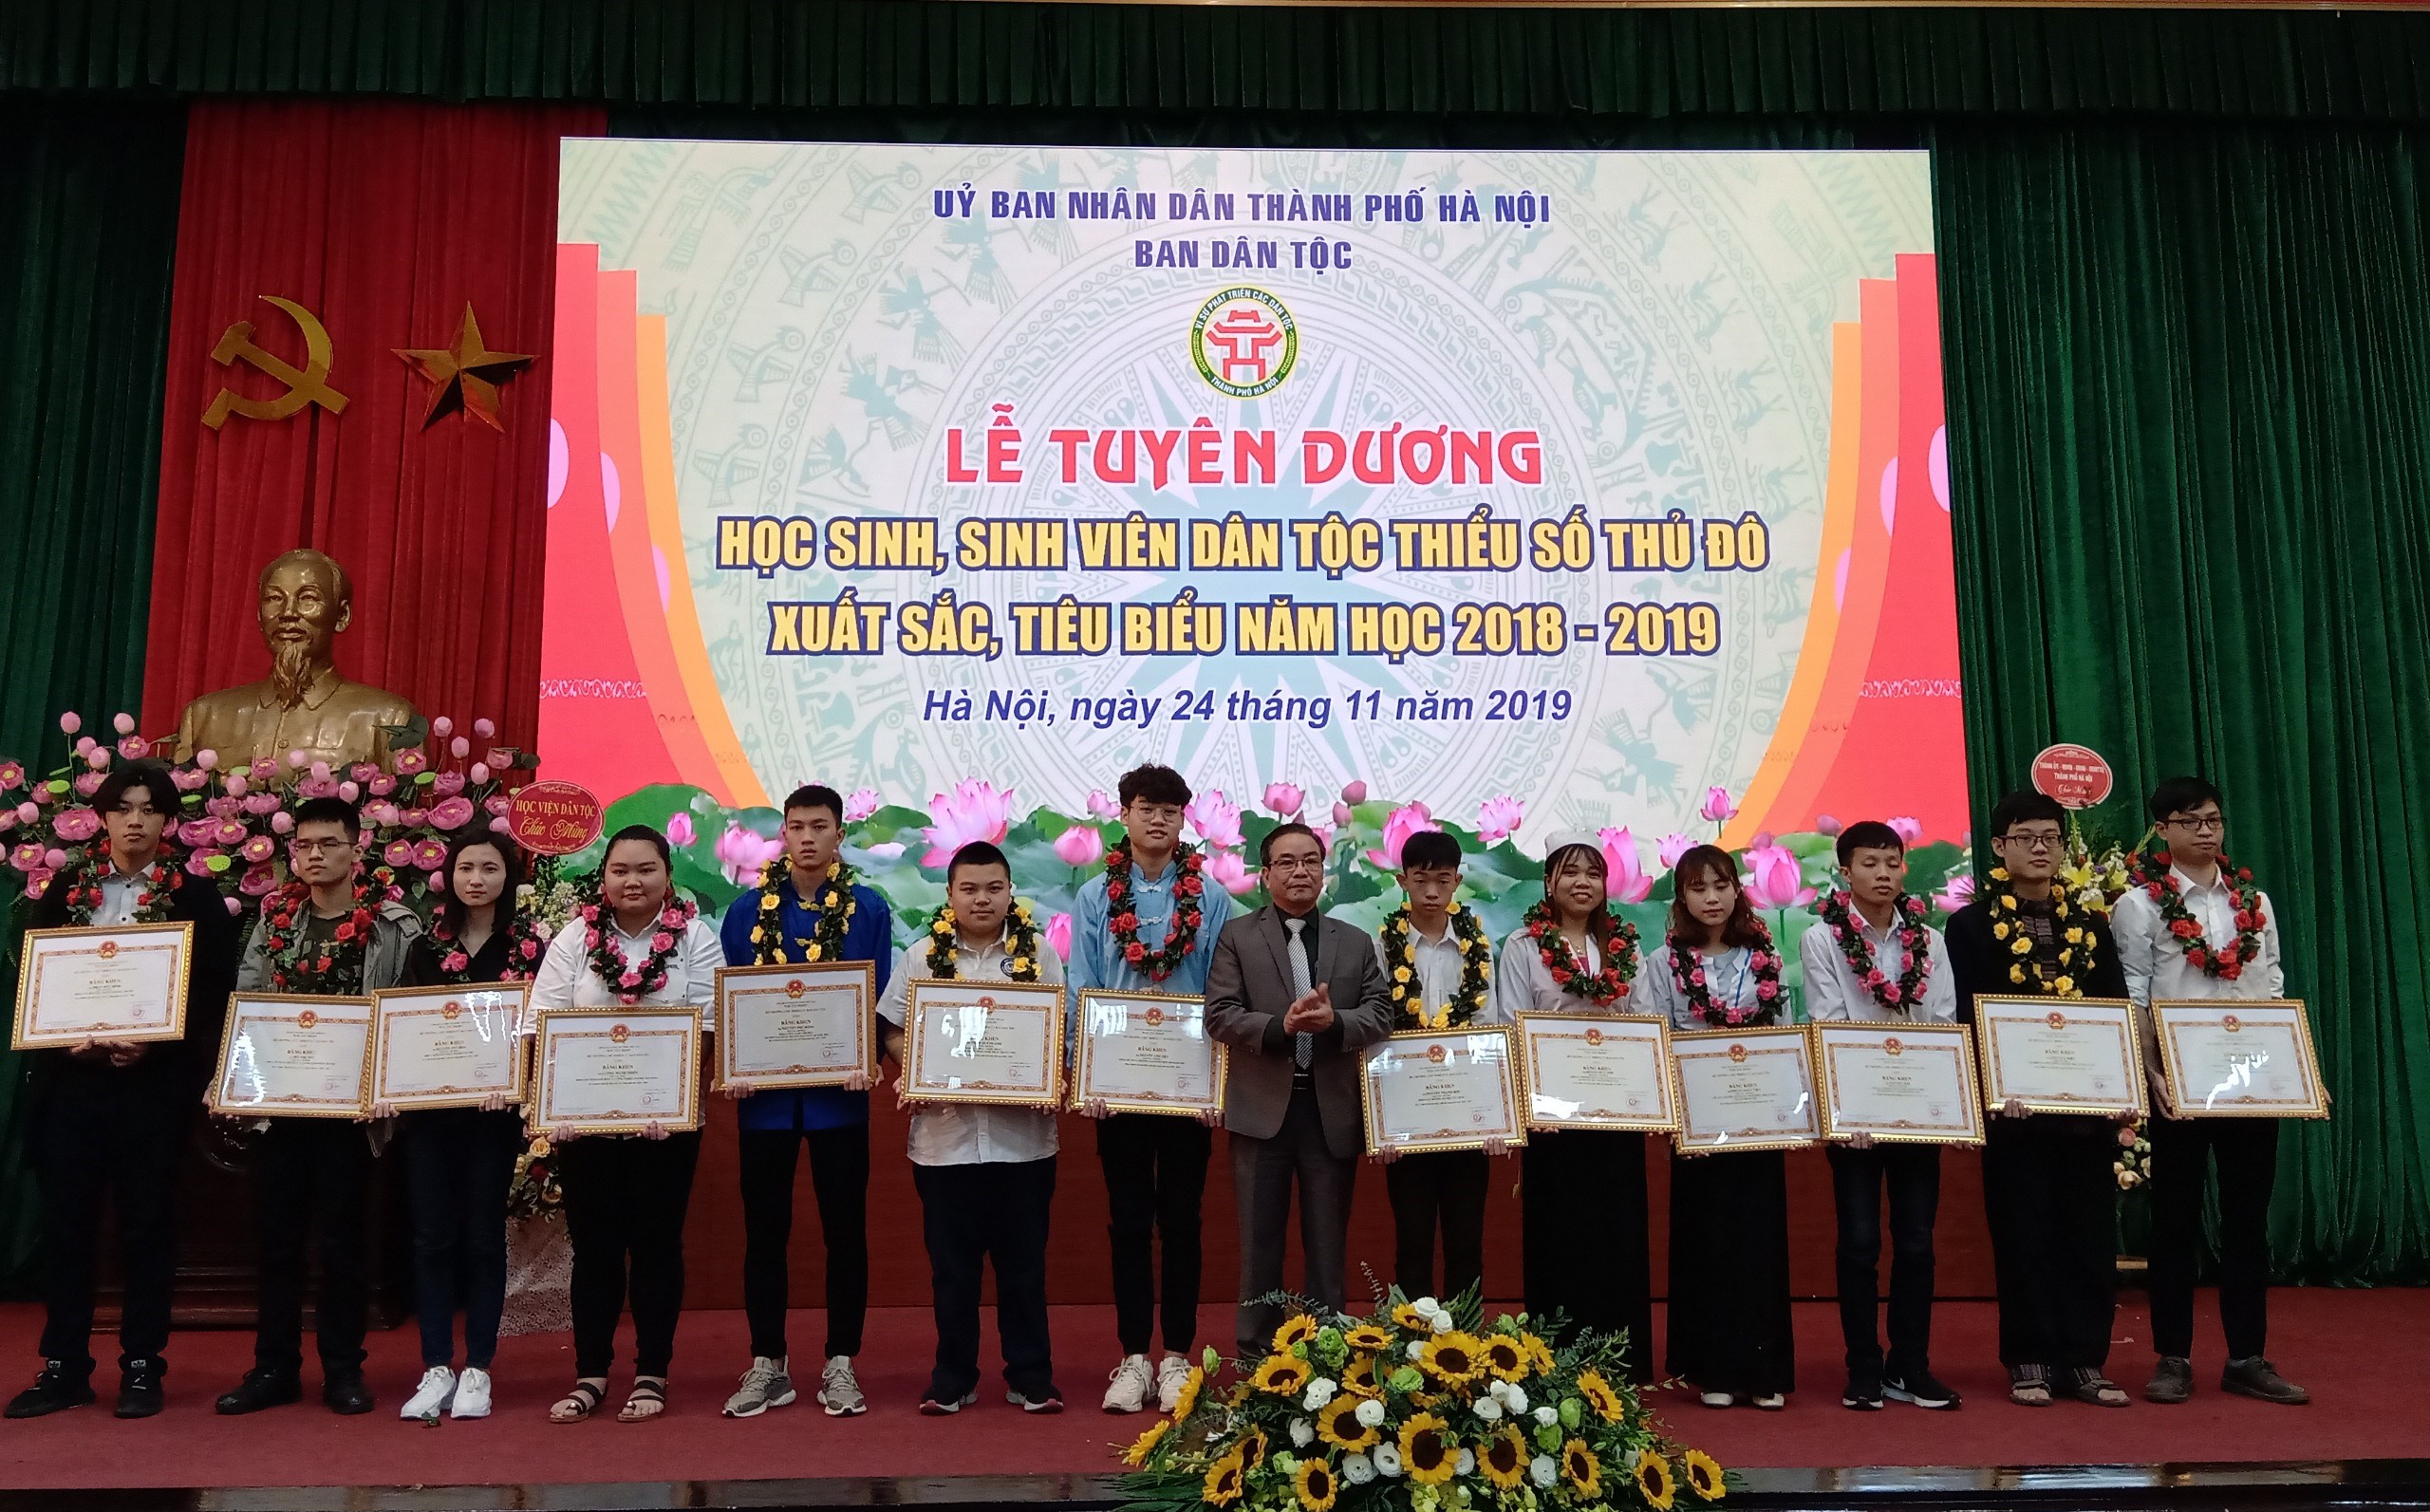 Ông Vũ Hữu Hoạt, Vụ trưởng Vụ Tuyên truyền (UBDT) trao Bằng khen của Bộ trưởng, Chủ nhiệm UBDT cho 14 em học sinh, sinh viên có thành tích tiêu biểu xuất sắc trong năm học 2018-2019